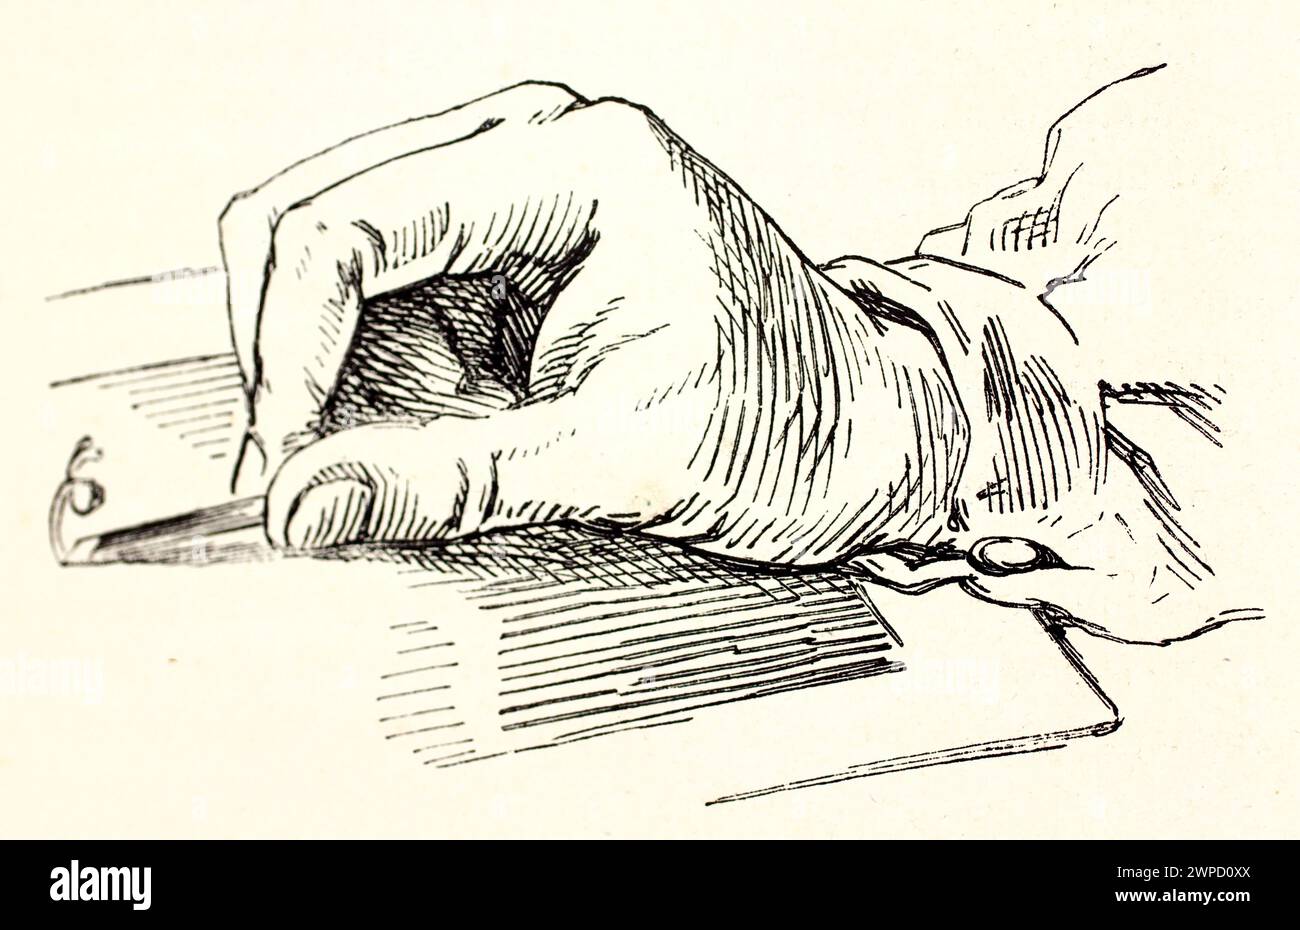 Vieja ilustración que muestra el trabajo de burin. Por autor desconocido, publicado en Magasin pittoresque, París, 1852 Foto de stock